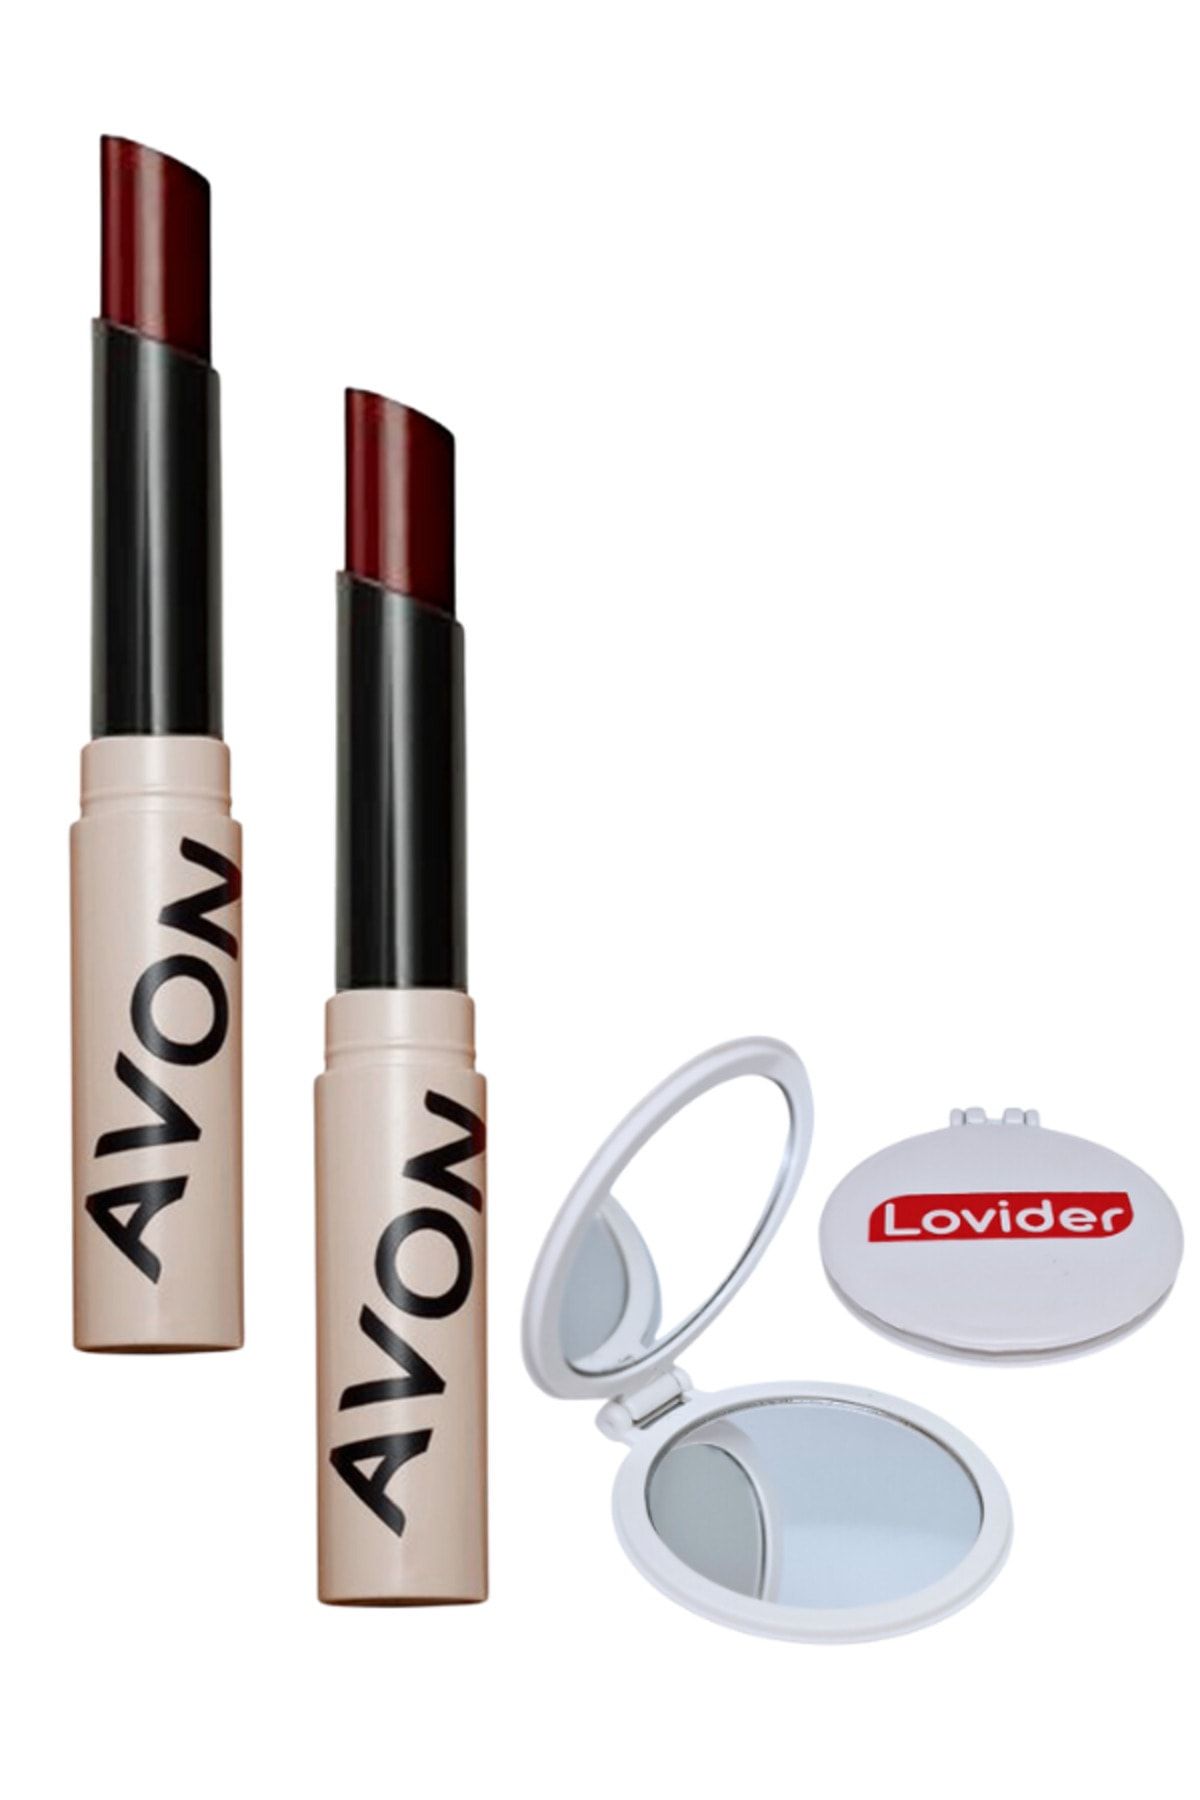 Avon Tinted Lip Balm Renkli Dudak Balmı Plum 2 Adet + Lovider Cep Aynası